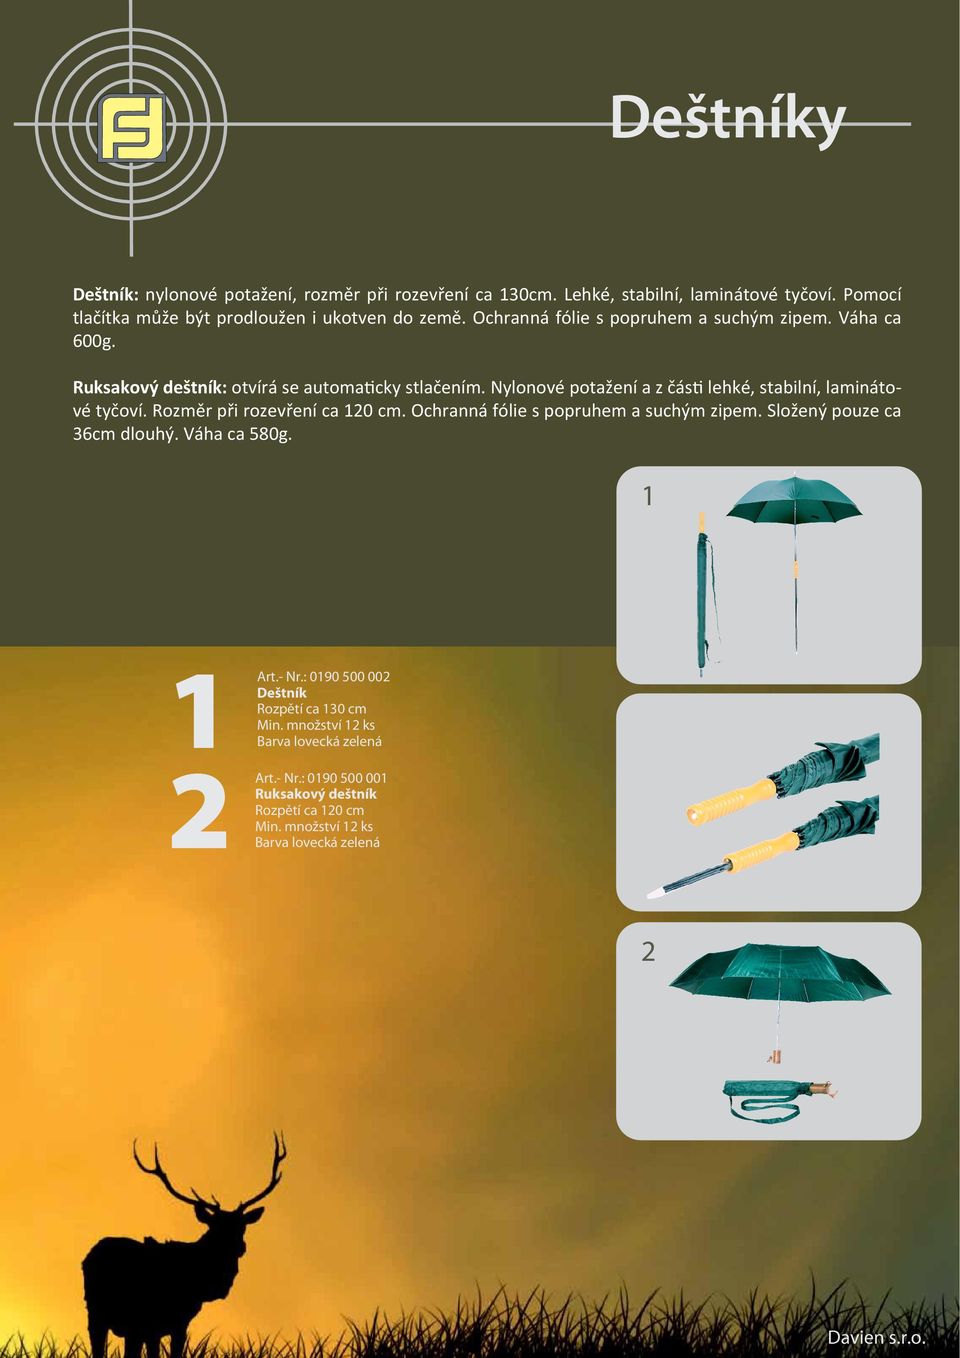 Ruksakový deštník: otvírá se automaticky stlačením. Nylonové potažení a z části lehké, stabilní, laminátové tyčoví.